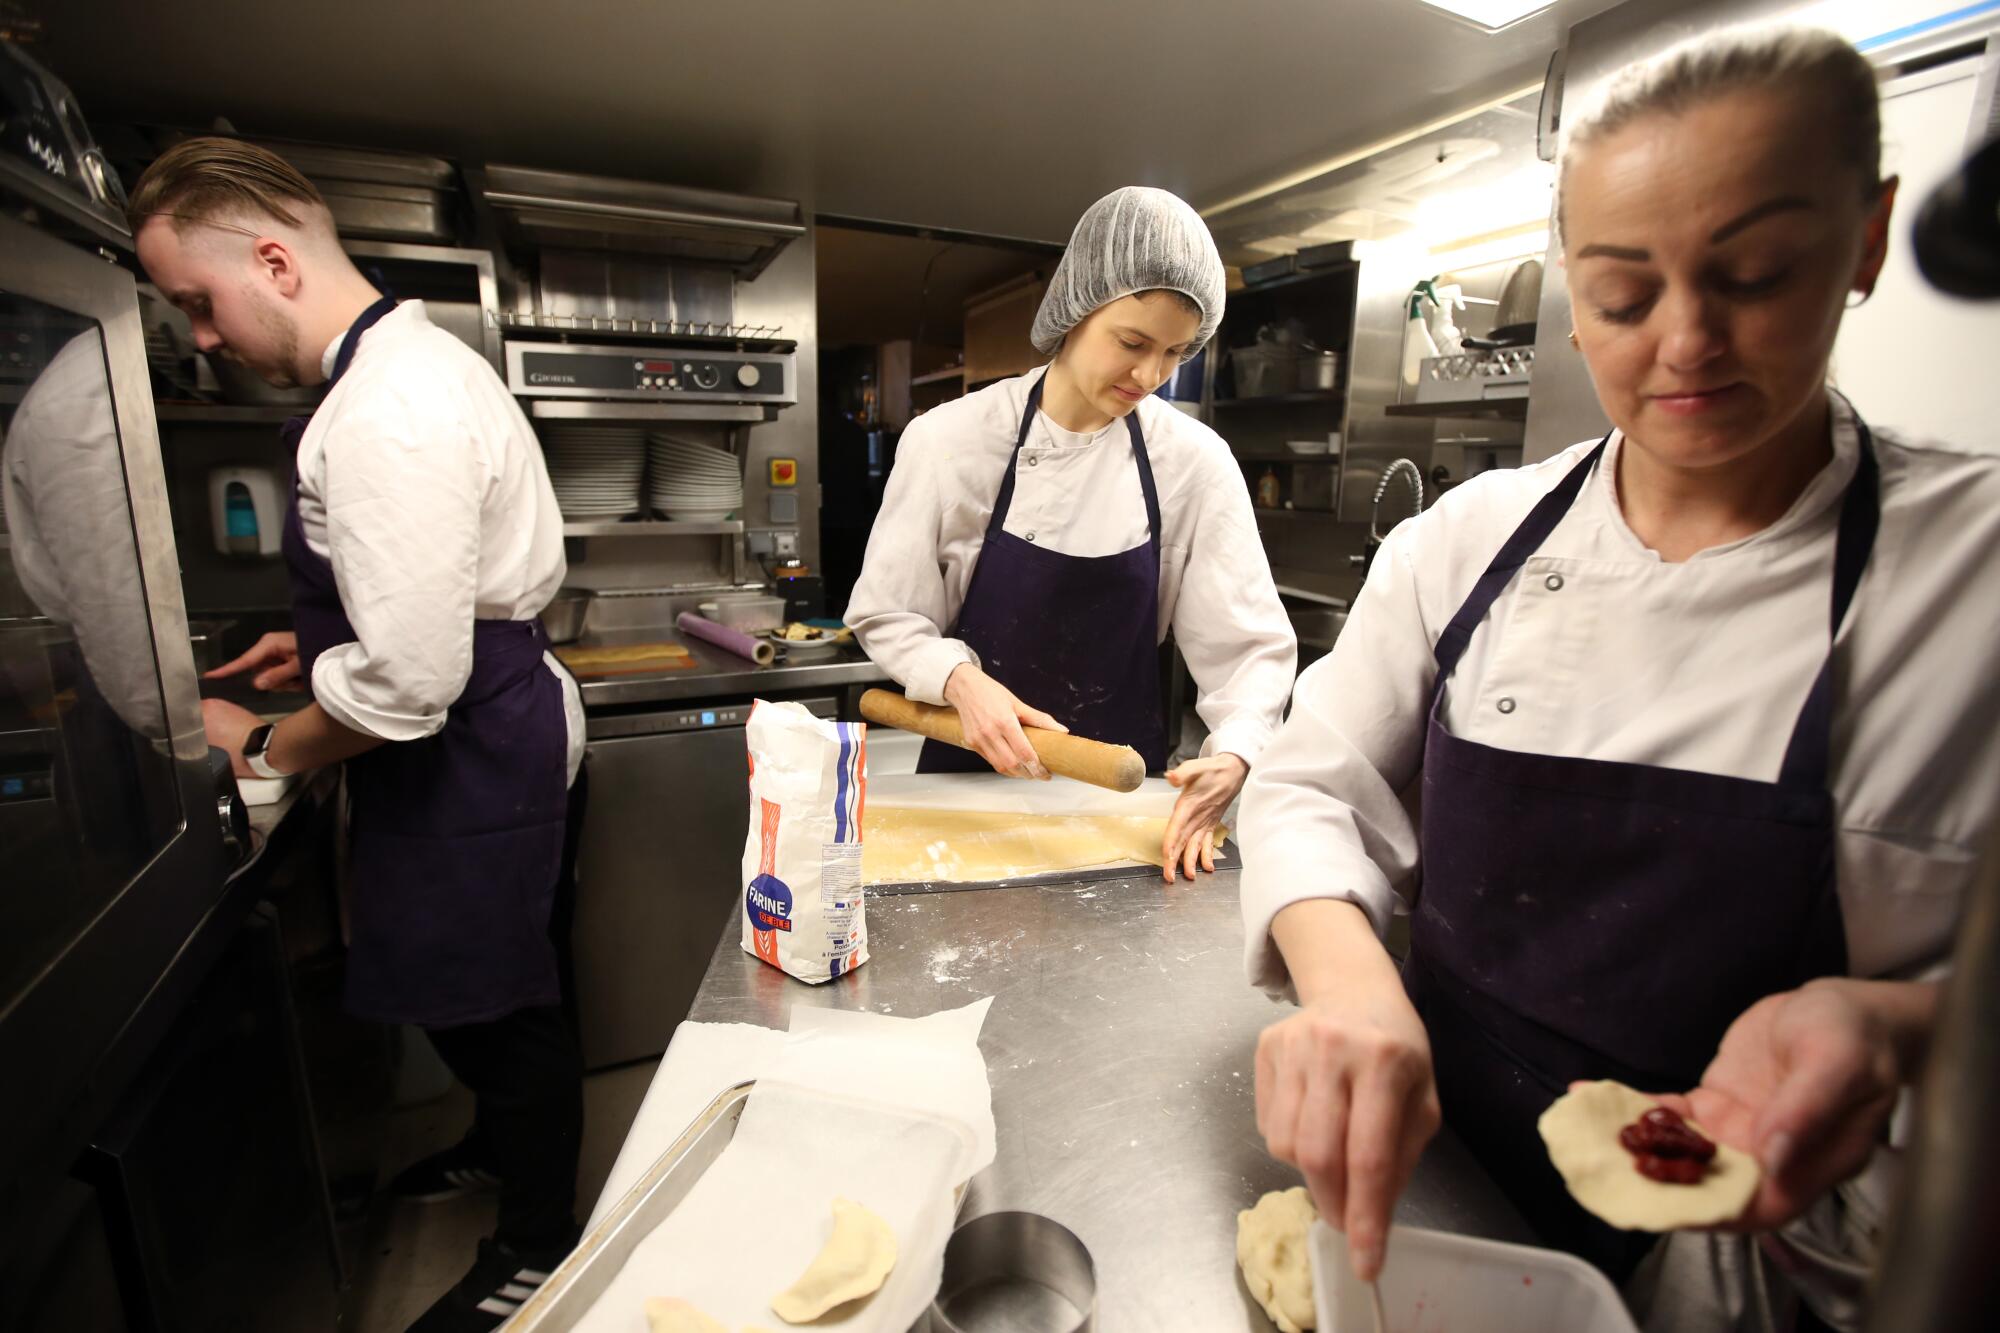 Ukraine refugees working in a Paris restaurant.